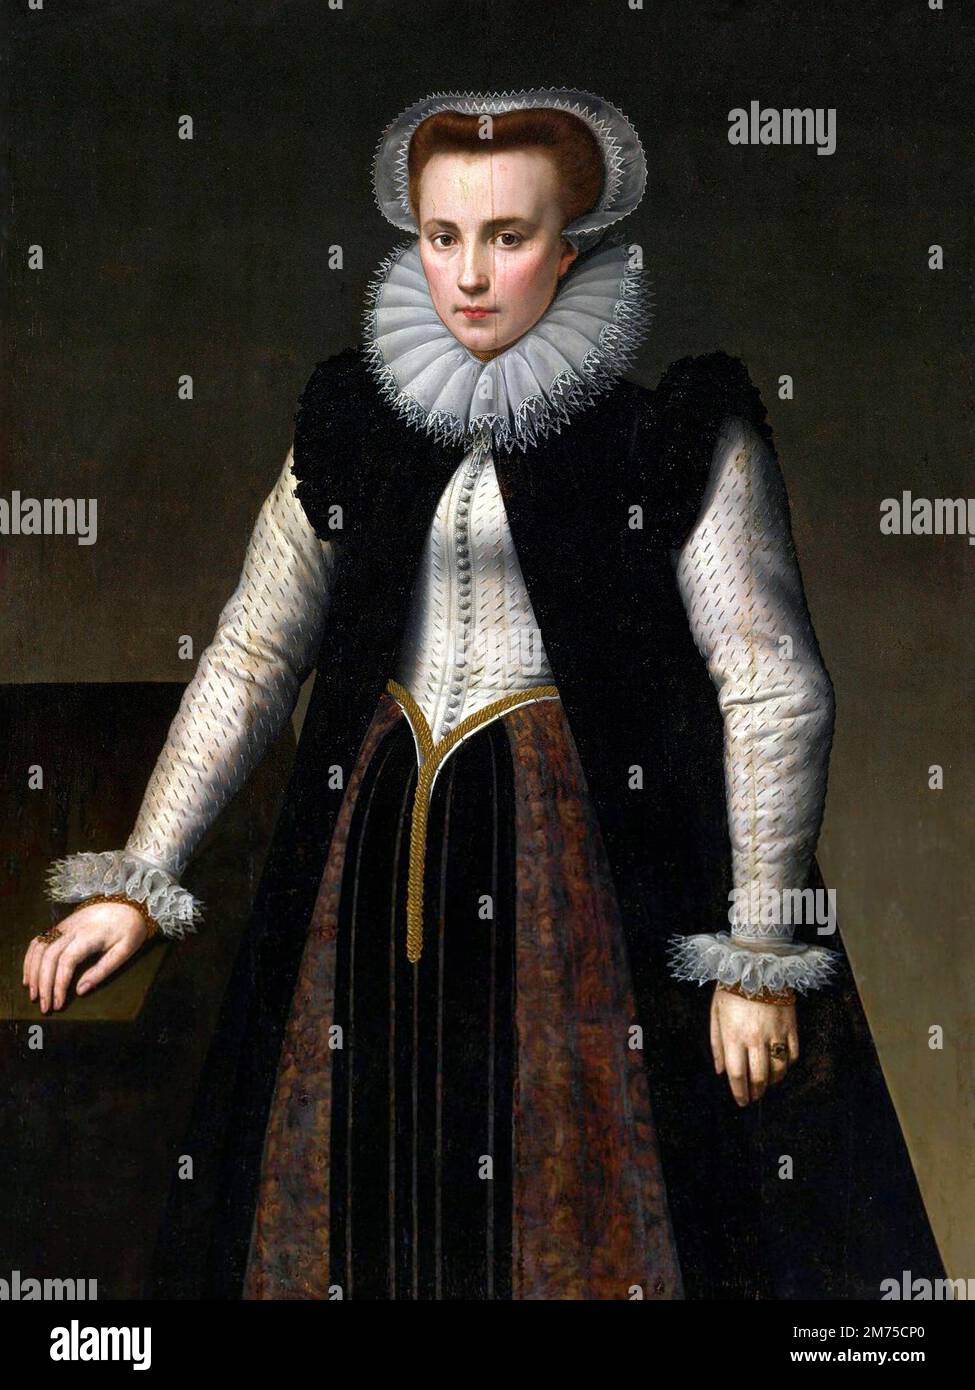 Elisabeth Báthory. Umstrittenes Porträt der Gräfin Elizabeth Báthory de Ecsed (1560-1614) von Anthonie Blocklandt van Montfoort (1533-1583), Öl im Panel, 1580. Bathory war eine ungarische Adlige und mutmaßlicher Serienmörder aus der Familie Báthory, die im Königreich Ungarn (jetzt Slowakei) Land besaß. Sie und vier ihrer Diener wurden beschuldigt, zwischen 1590 und 1610 Hunderte von Mädchen und Frauen gefoltert und getötet zu haben. Ihre Diener wurden vor Gericht gestellt und verurteilt, während Báthory bis zu ihrem Tod eingesperrt war. Stockfoto